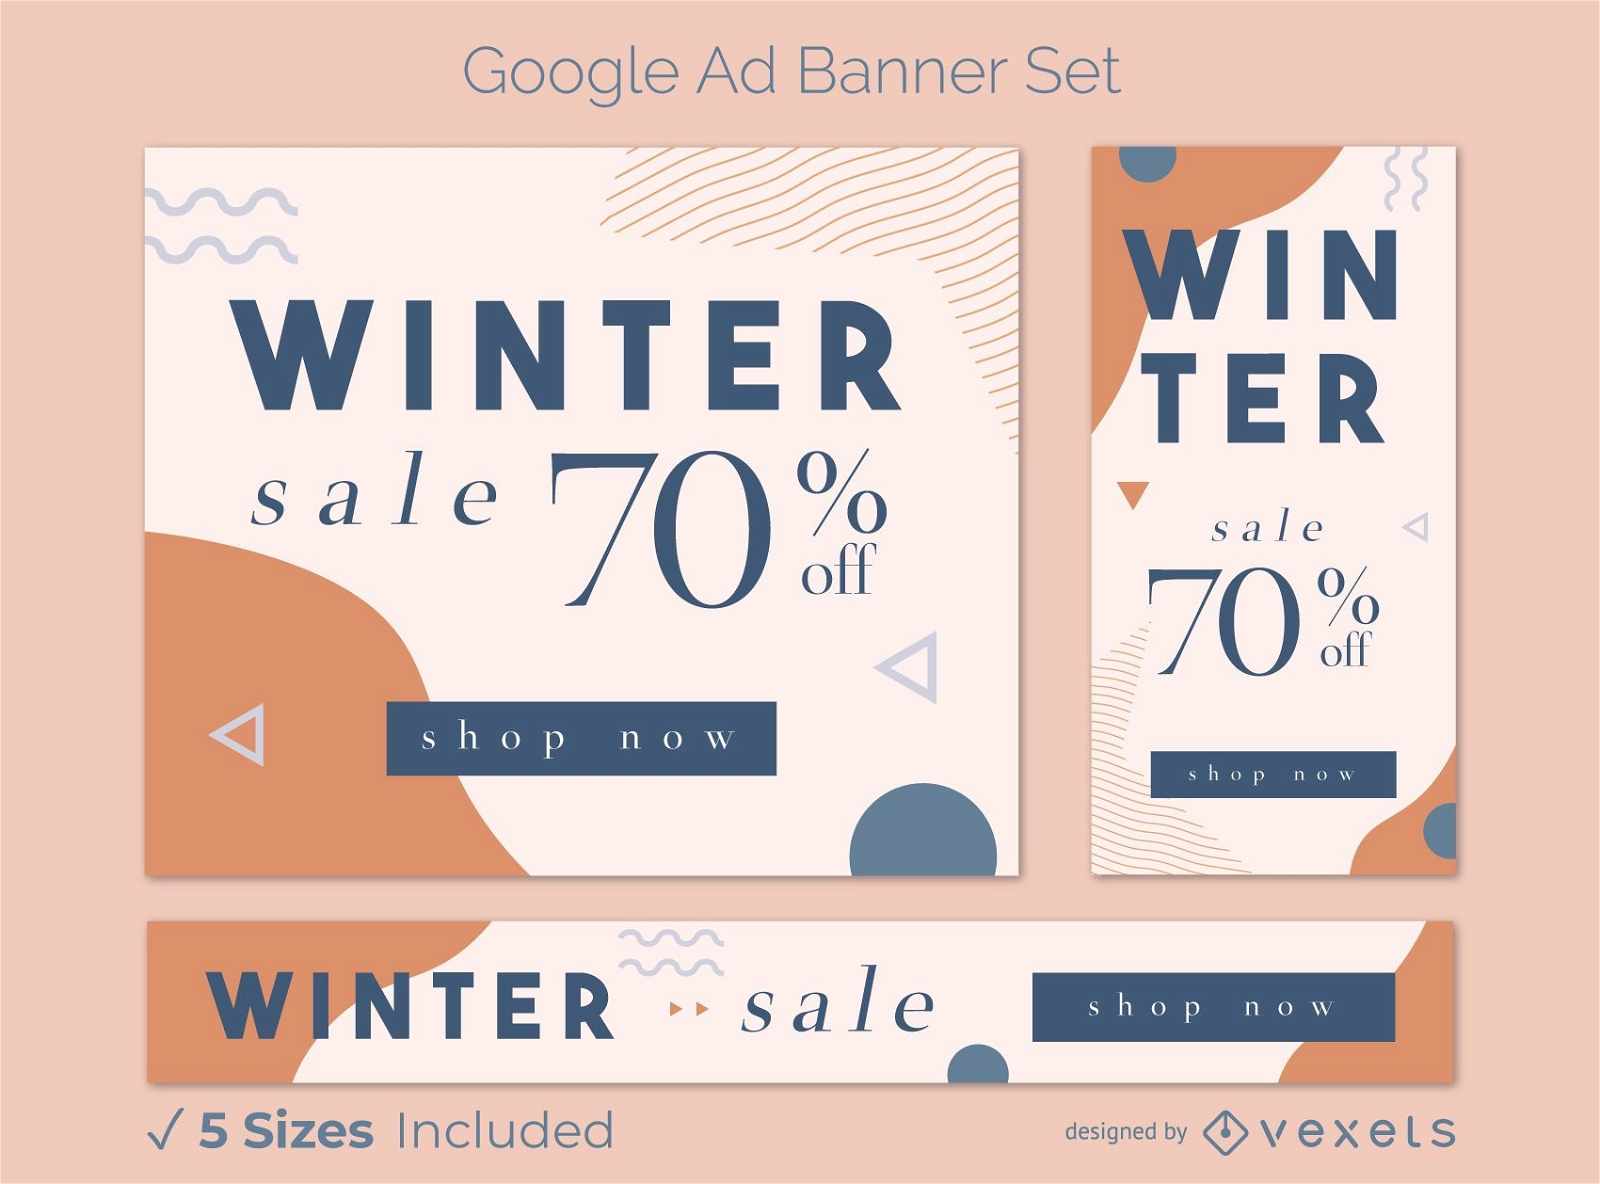 Paquete de banners de anuncios de Google de ofertas de invierno